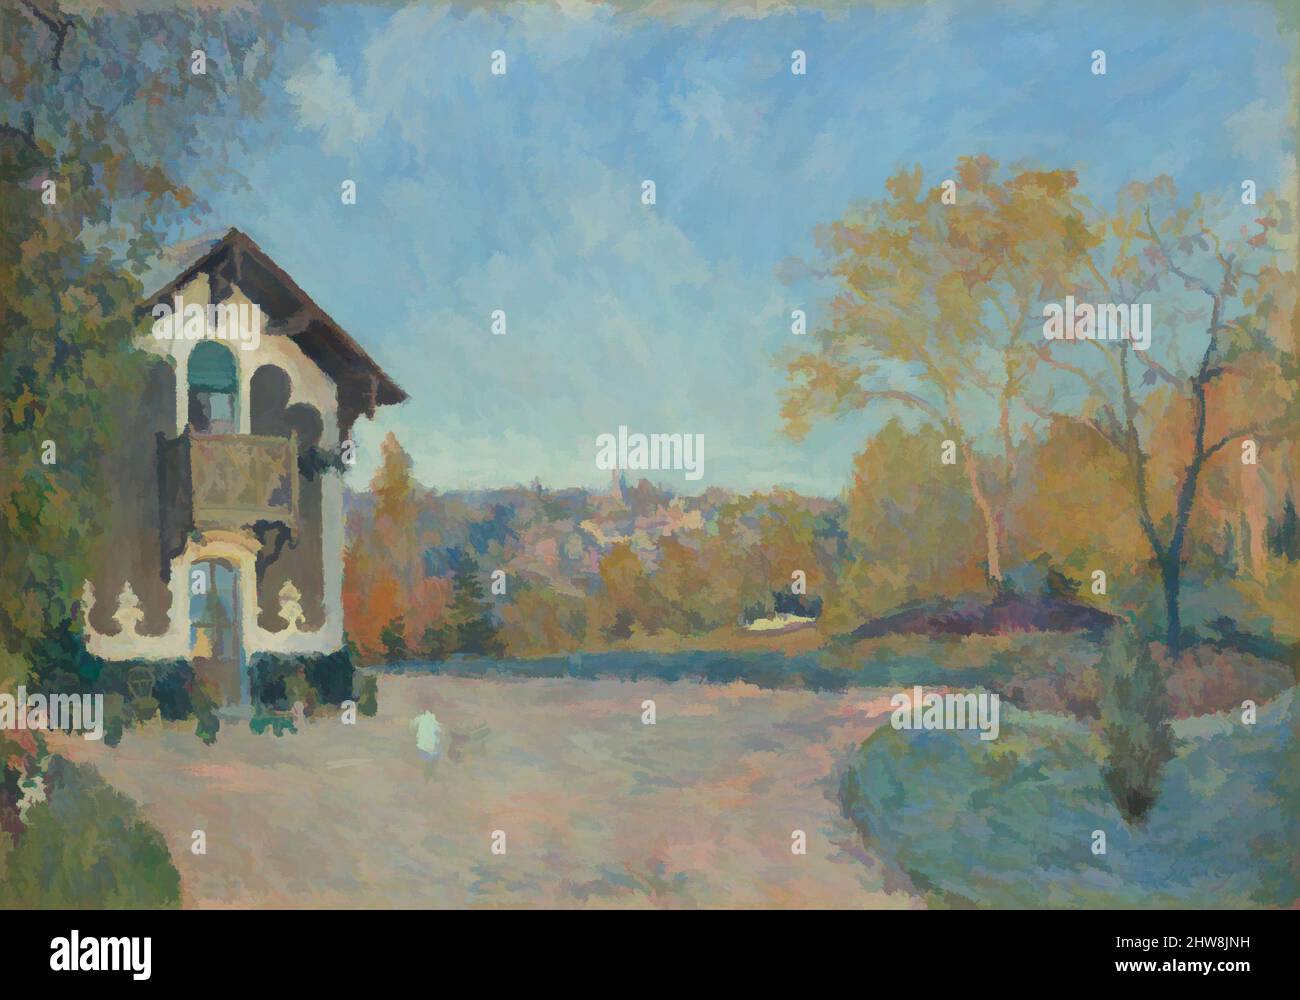 Art Inspired by View of Marly-le-ROI von Coeur-Volant, 1876, Öl auf Leinwand, 25 3/4 x 36 3/8 Zoll (65,4 x 92,4 cm), Gemälde, Alfred Sisley (britisch, Paris 1839–1899 Moret-sur-Loing), um diese Panoramaszene zu malen, ging Sisley von seinem gemieteten Haus in Marly-le-ROI aus den Hügel hinauf, in der Nähe von Classic Works, die von Artotop mit einem Schuss Moderne modernisiert wurden. Formen, Farbe und Wert, auffällige visuelle Wirkung auf Kunst. Emotionen durch Freiheit von Kunstwerken auf zeitgemäße Weise. Eine zeitlose Botschaft, die eine wild kreative neue Richtung verfolgt. Künstler, die sich dem digitalen Medium zuwenden und die Artotop NFT erschaffen Stockfoto